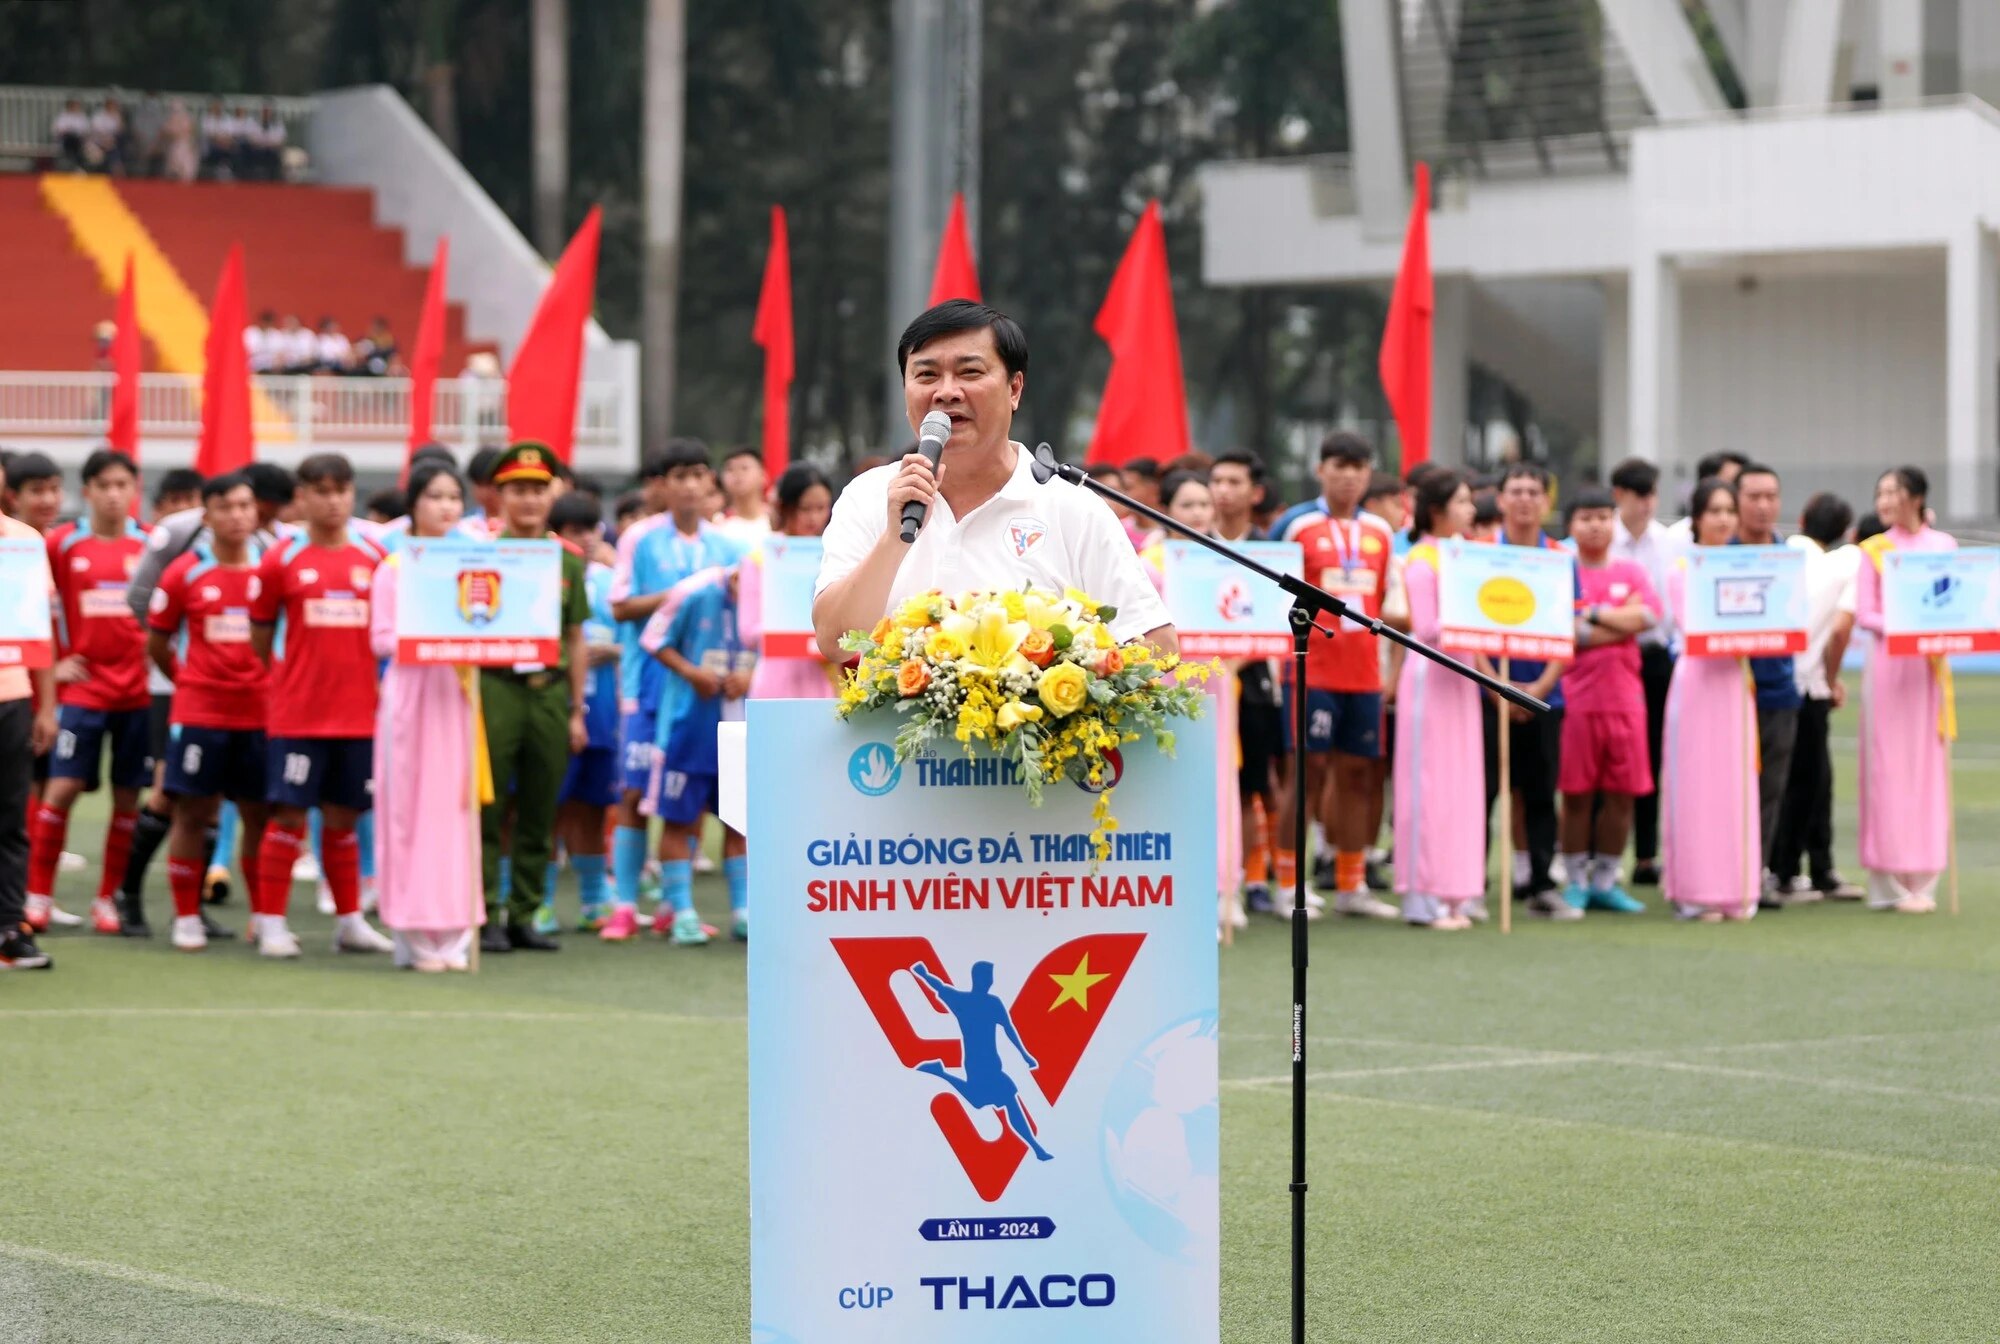 Hình ảnh ấn tượng ngày khai màn giải bóng đá Thanh Niên sinh viên Việt Nam- Ảnh 11.